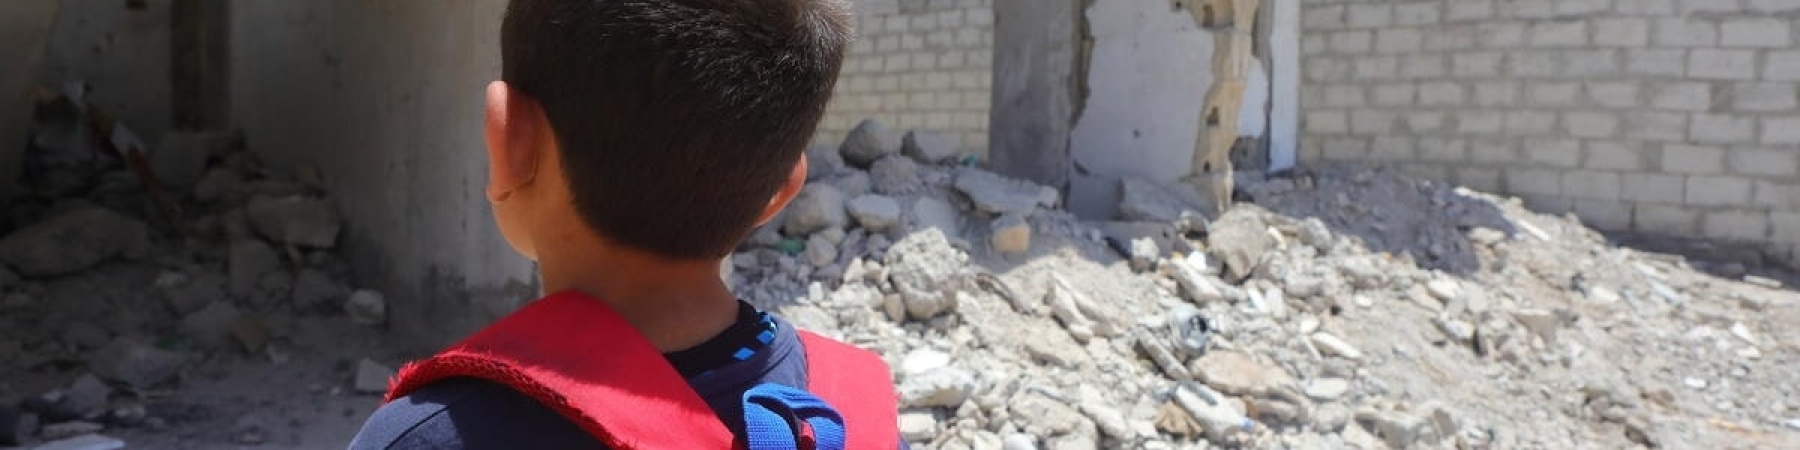 bambino con zaino rosso che guarda le macerie di una scuola distrutta 